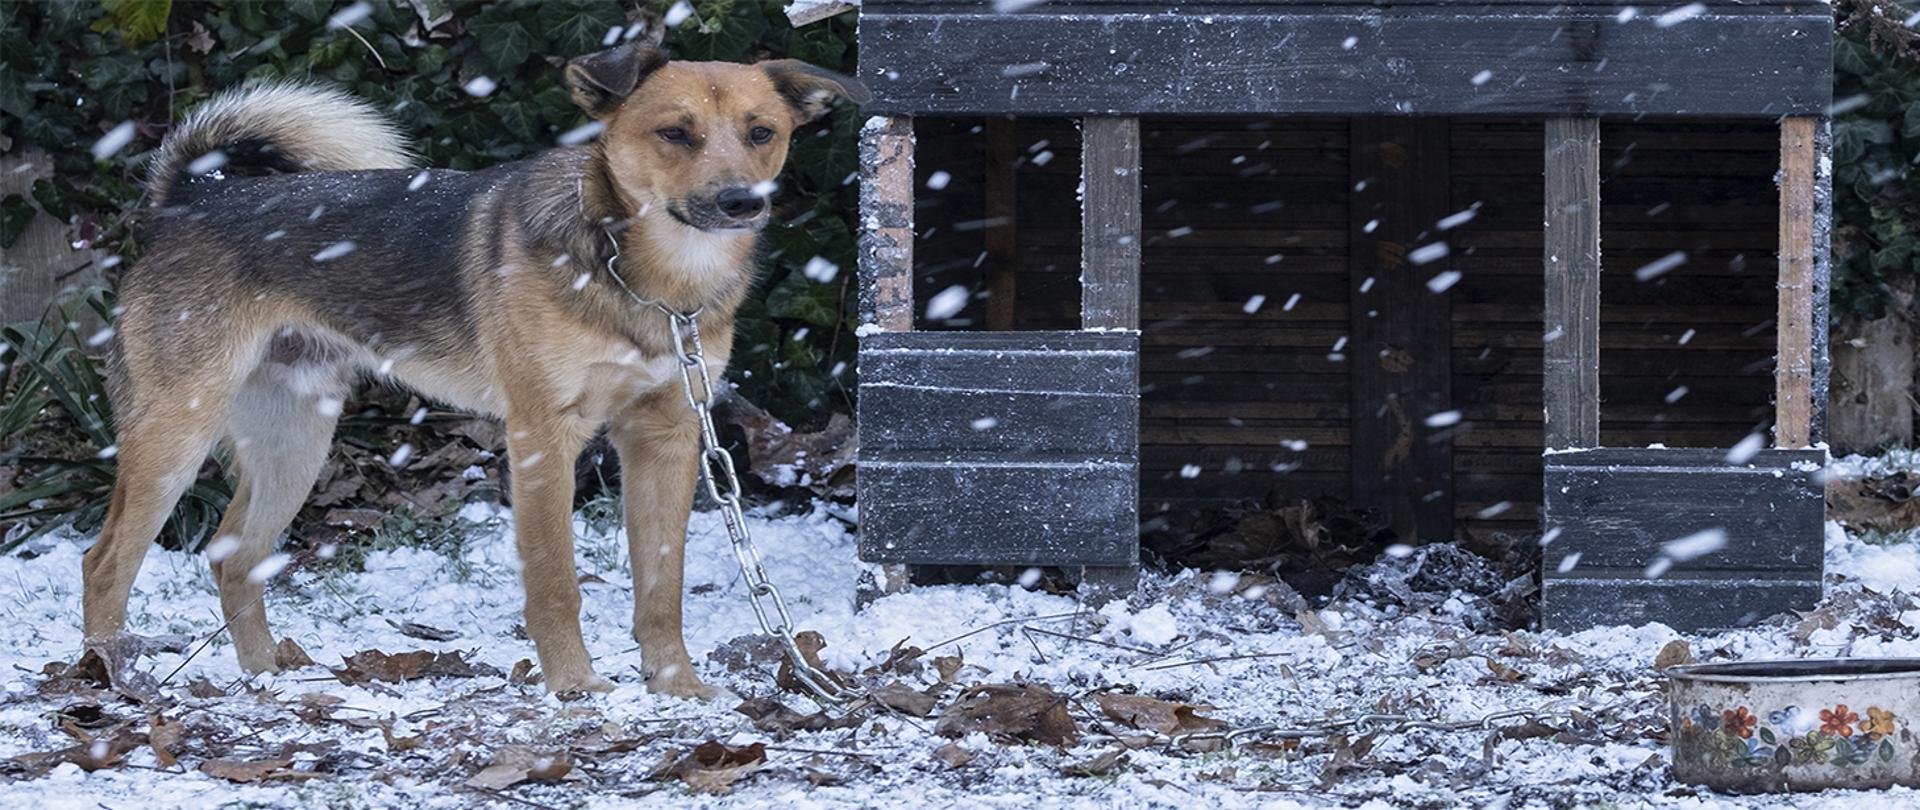 Pies stojący na śniegu uwiązany łańcuchem przed dziurawą budą dla psa